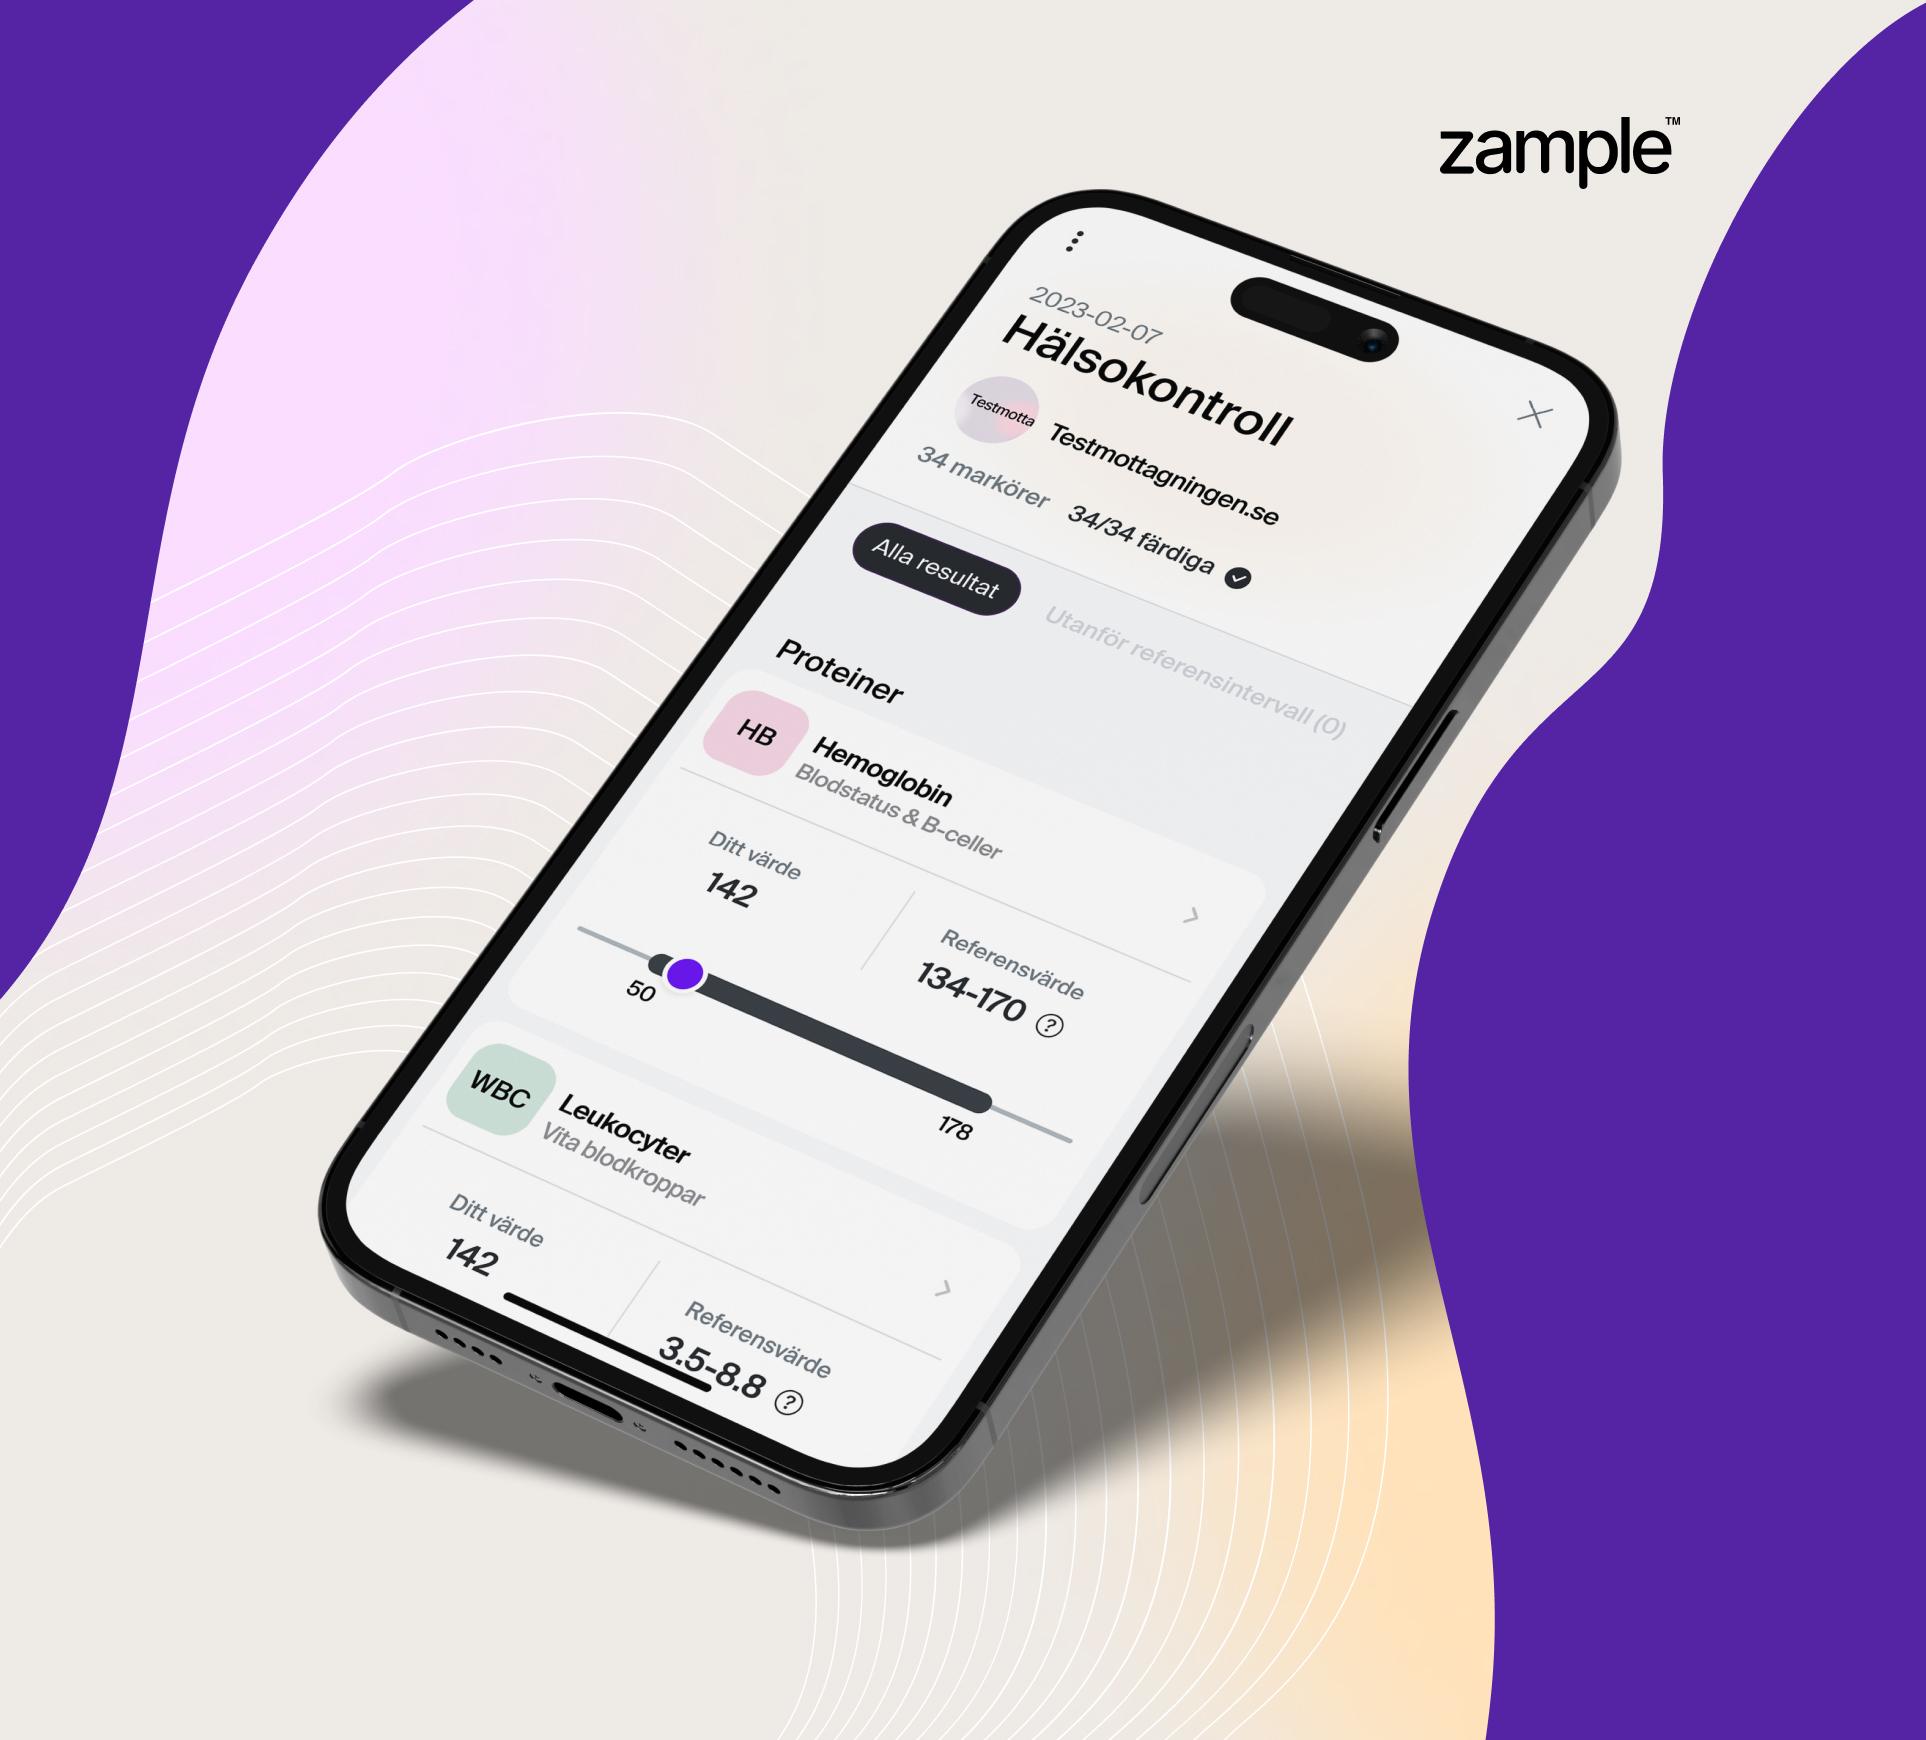 zample är en digital provsvarstjänst med trygg och säker inloggning.